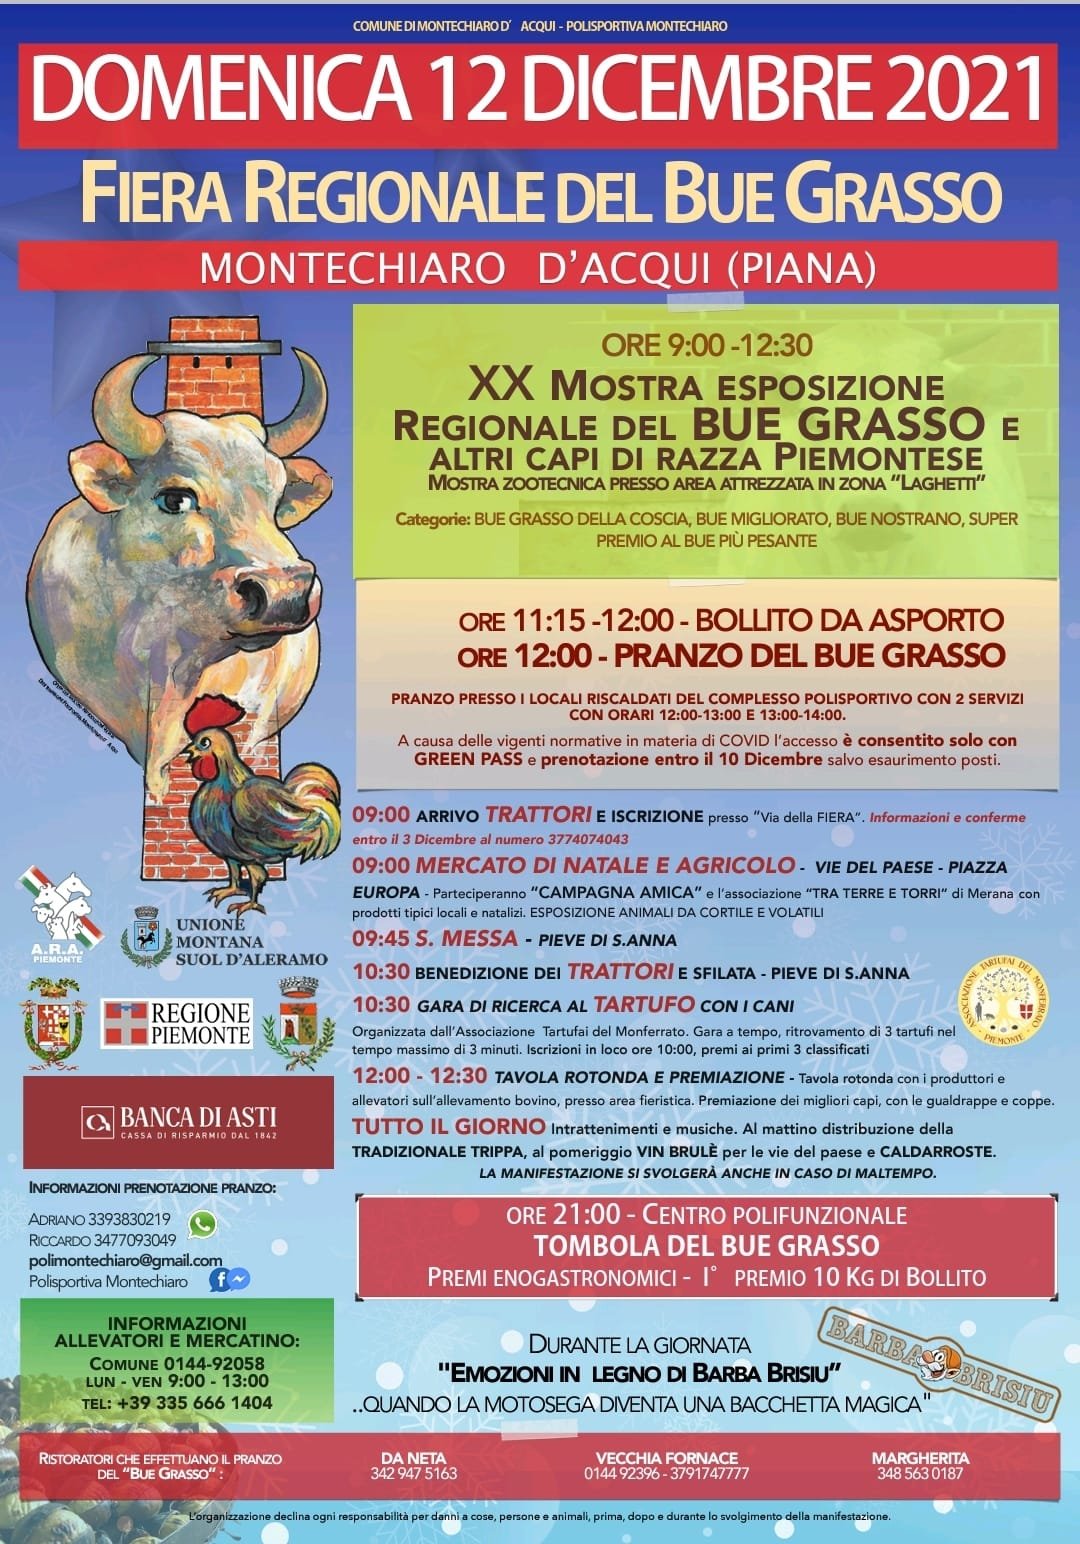 Il 12 dicembre la Fiera del Bue Grasso a Montechiaro Piana